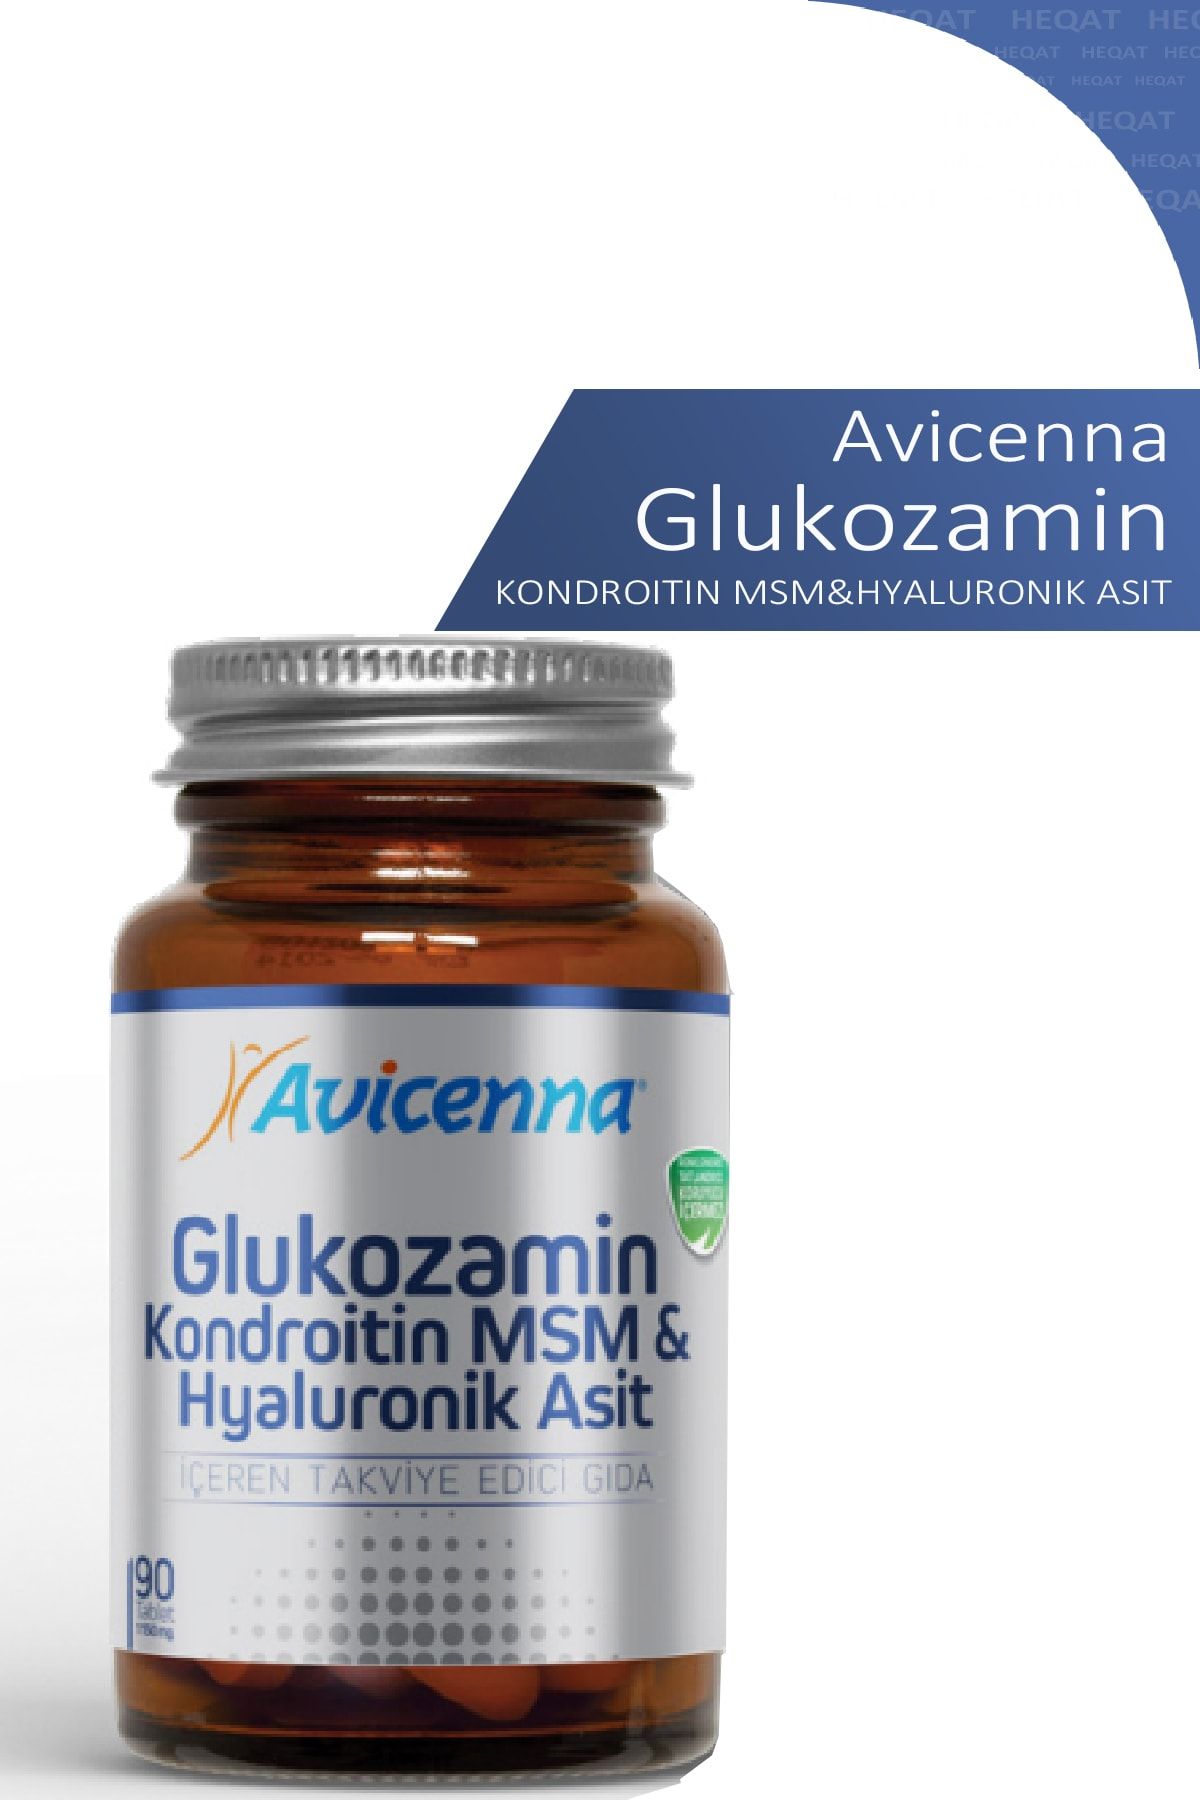 Avicenna Glukozamin - Kondroitin Msm & Hyaluronik Asit Içeren Takviye Edici Gıda - 90 Tablet -8690088005732